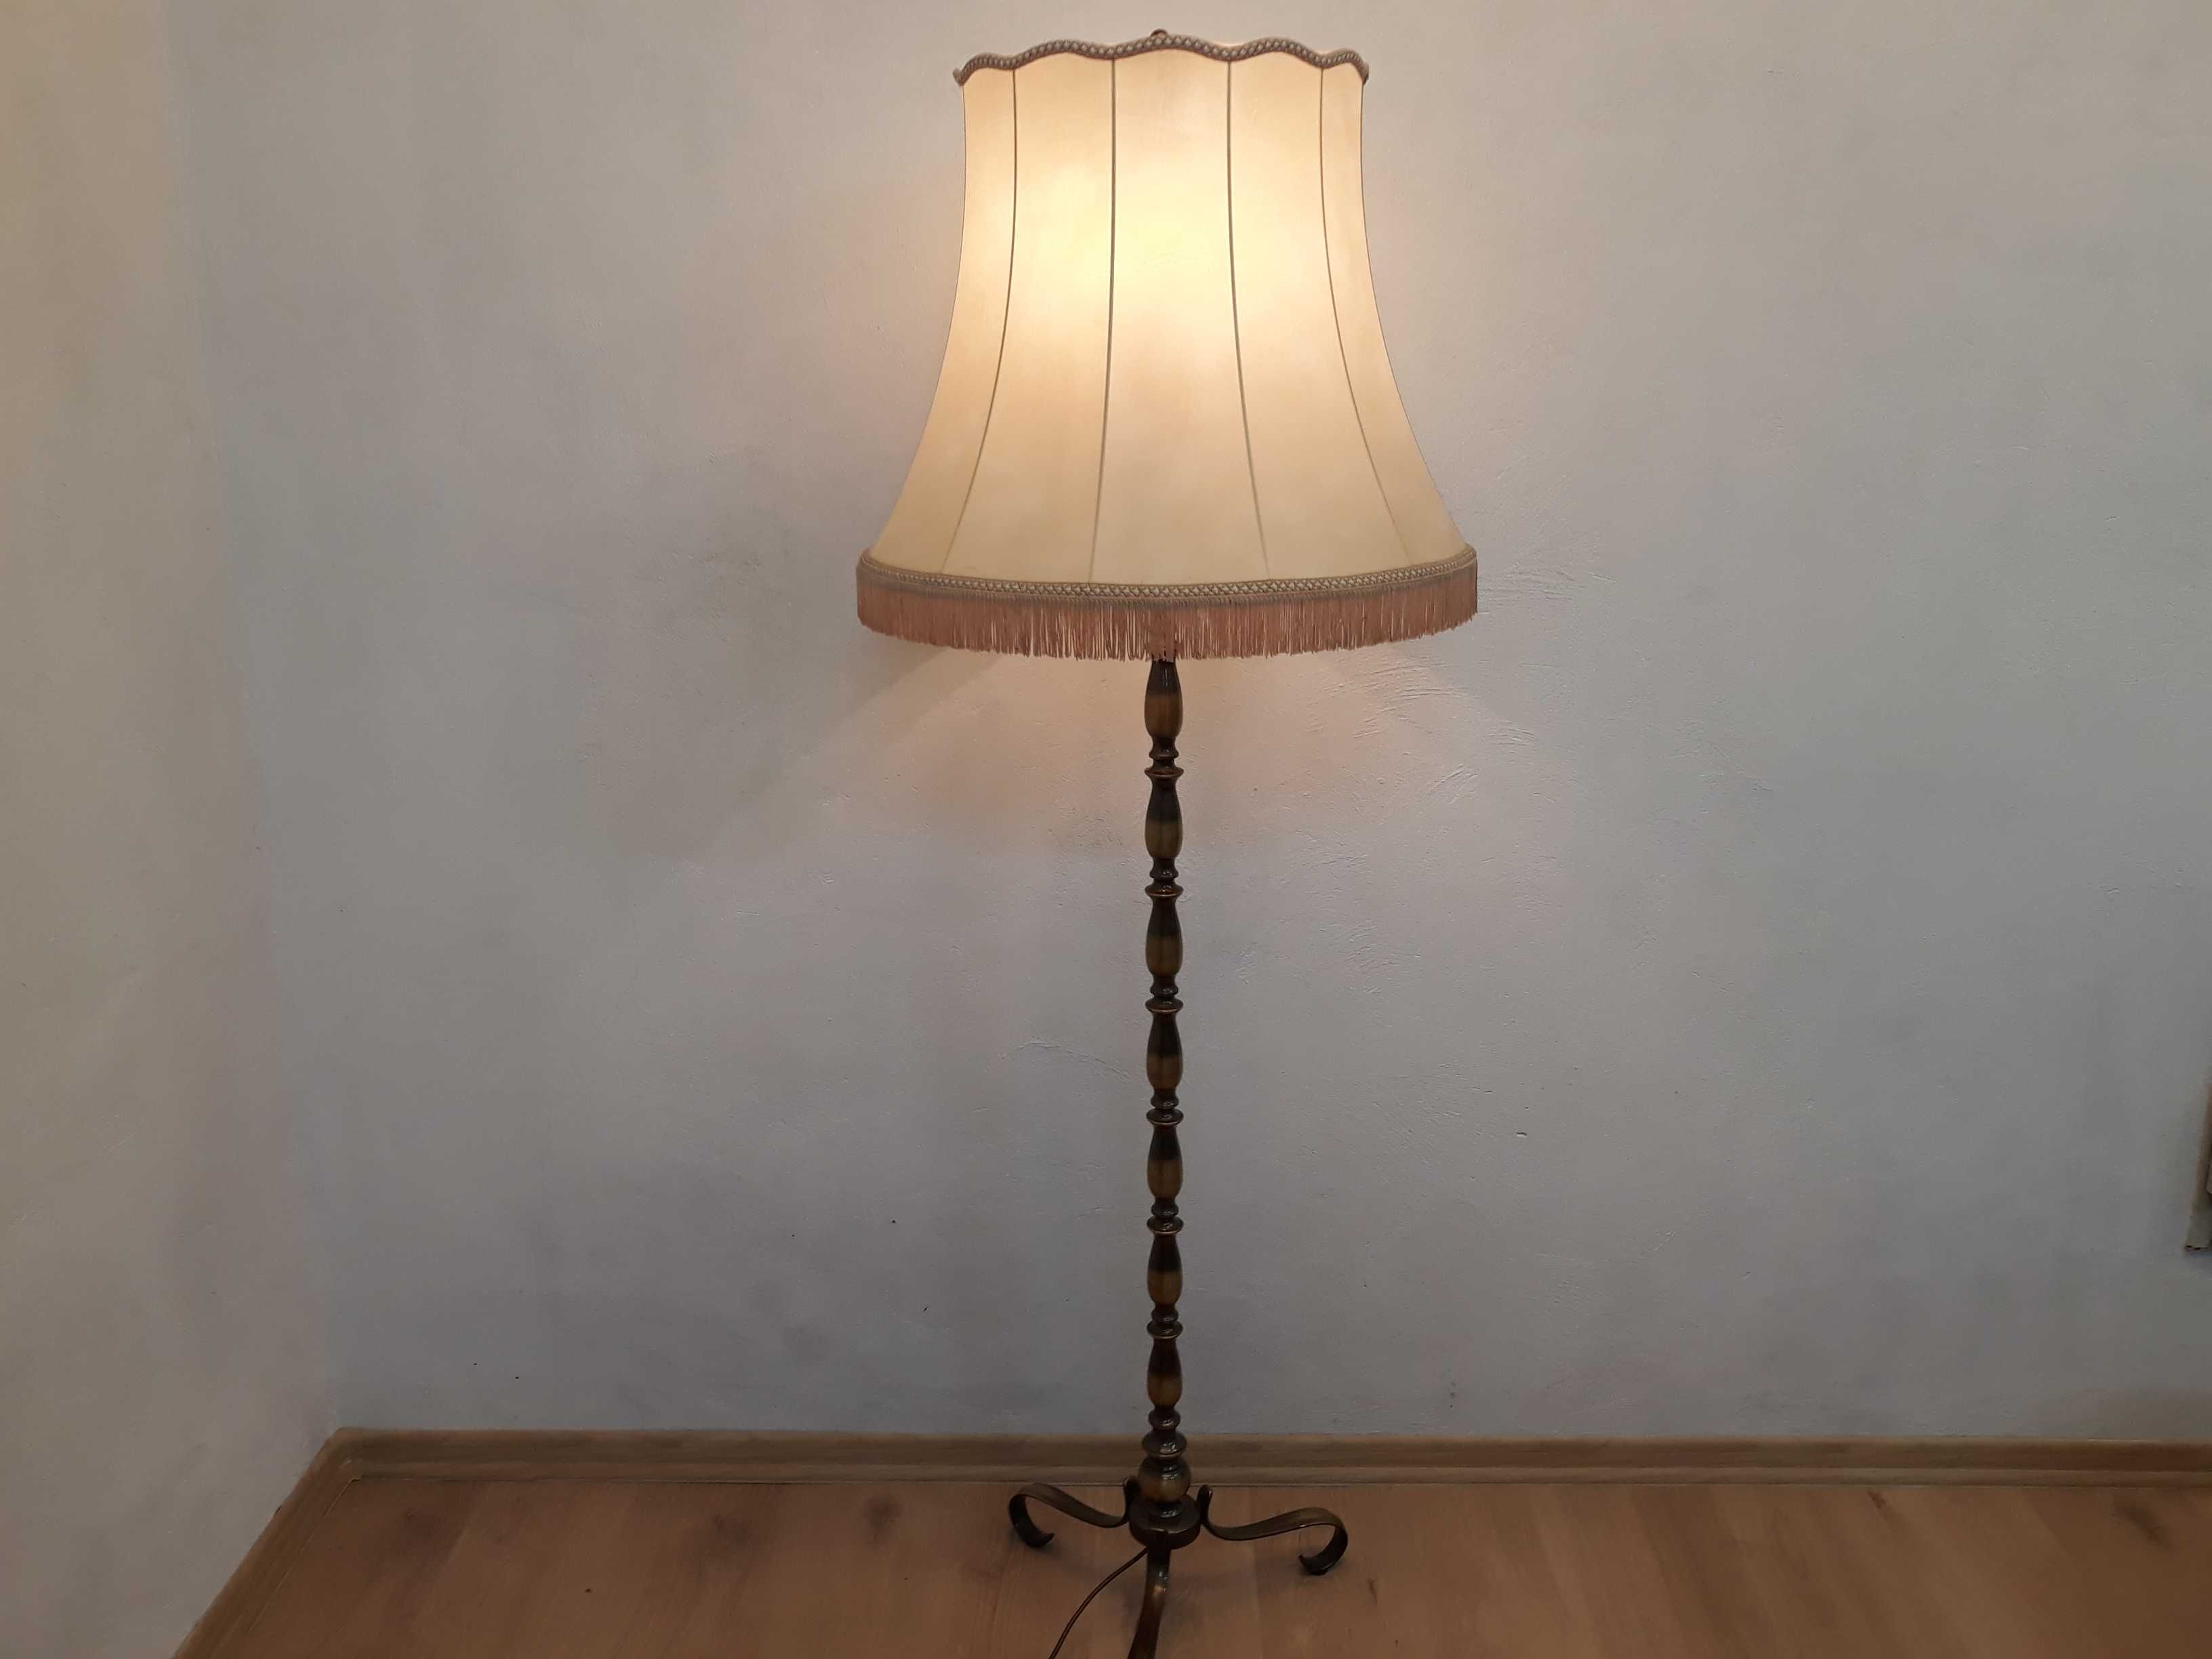 Stara lampa podłogowa mosiężna z abażurem na trójnogu